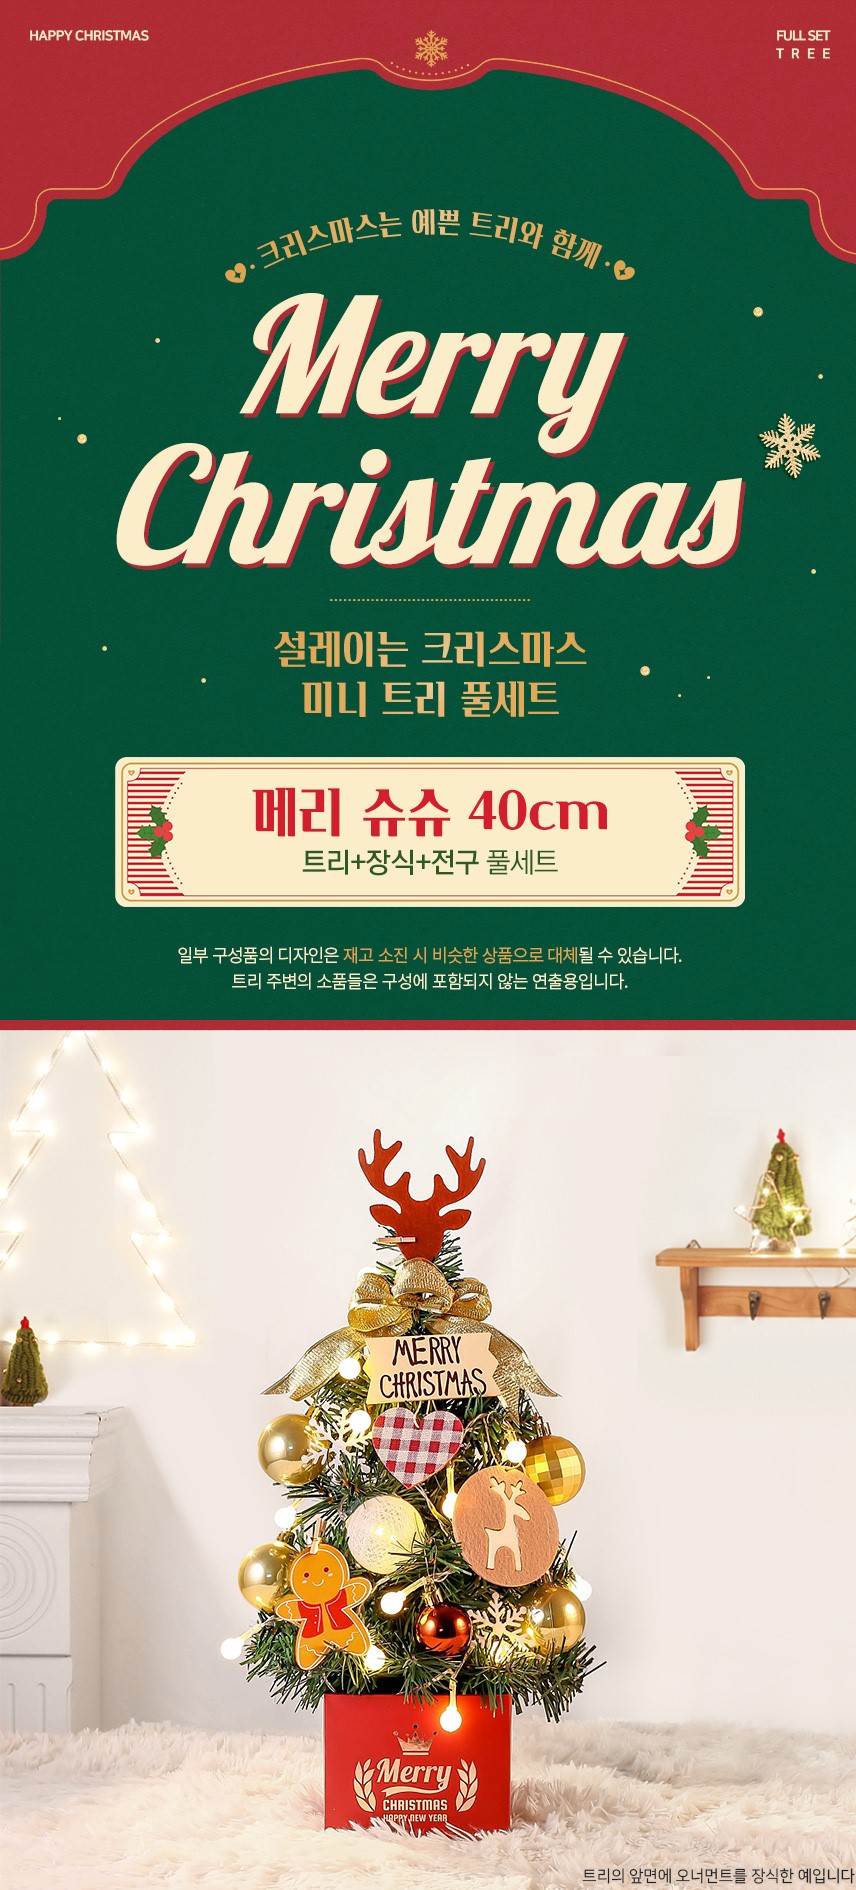 韓國食品-Christmas Gift Idea! Christmas Tree Set (Deer) (includes decoration inside) 40cm